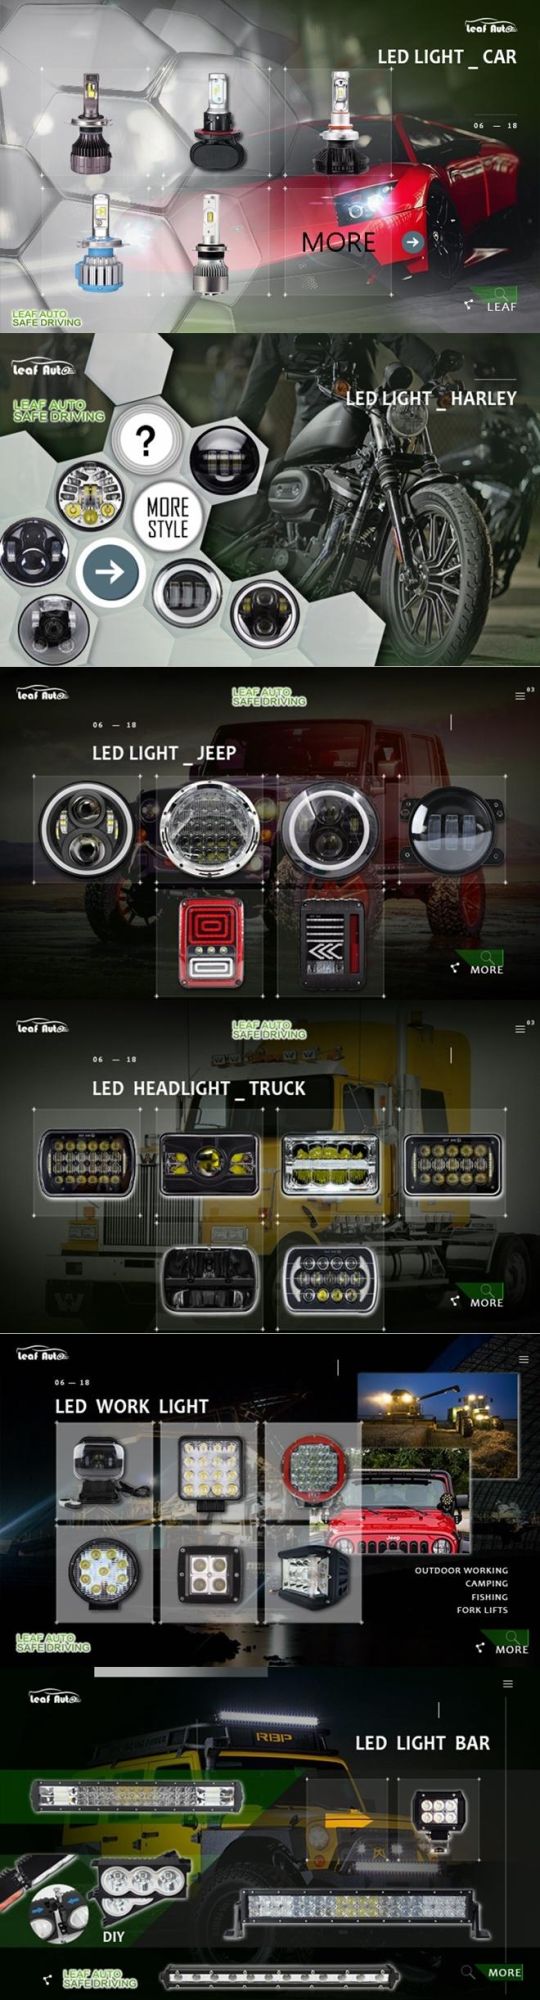 T1 H4 Turbo LED Headlight Kit 72W 8000lm H1 H3 H7 H8 H9 H11 Hb3 Hb4 Fun LED Bulb Light Fog Light Pair Turbo LED Headlight Kit